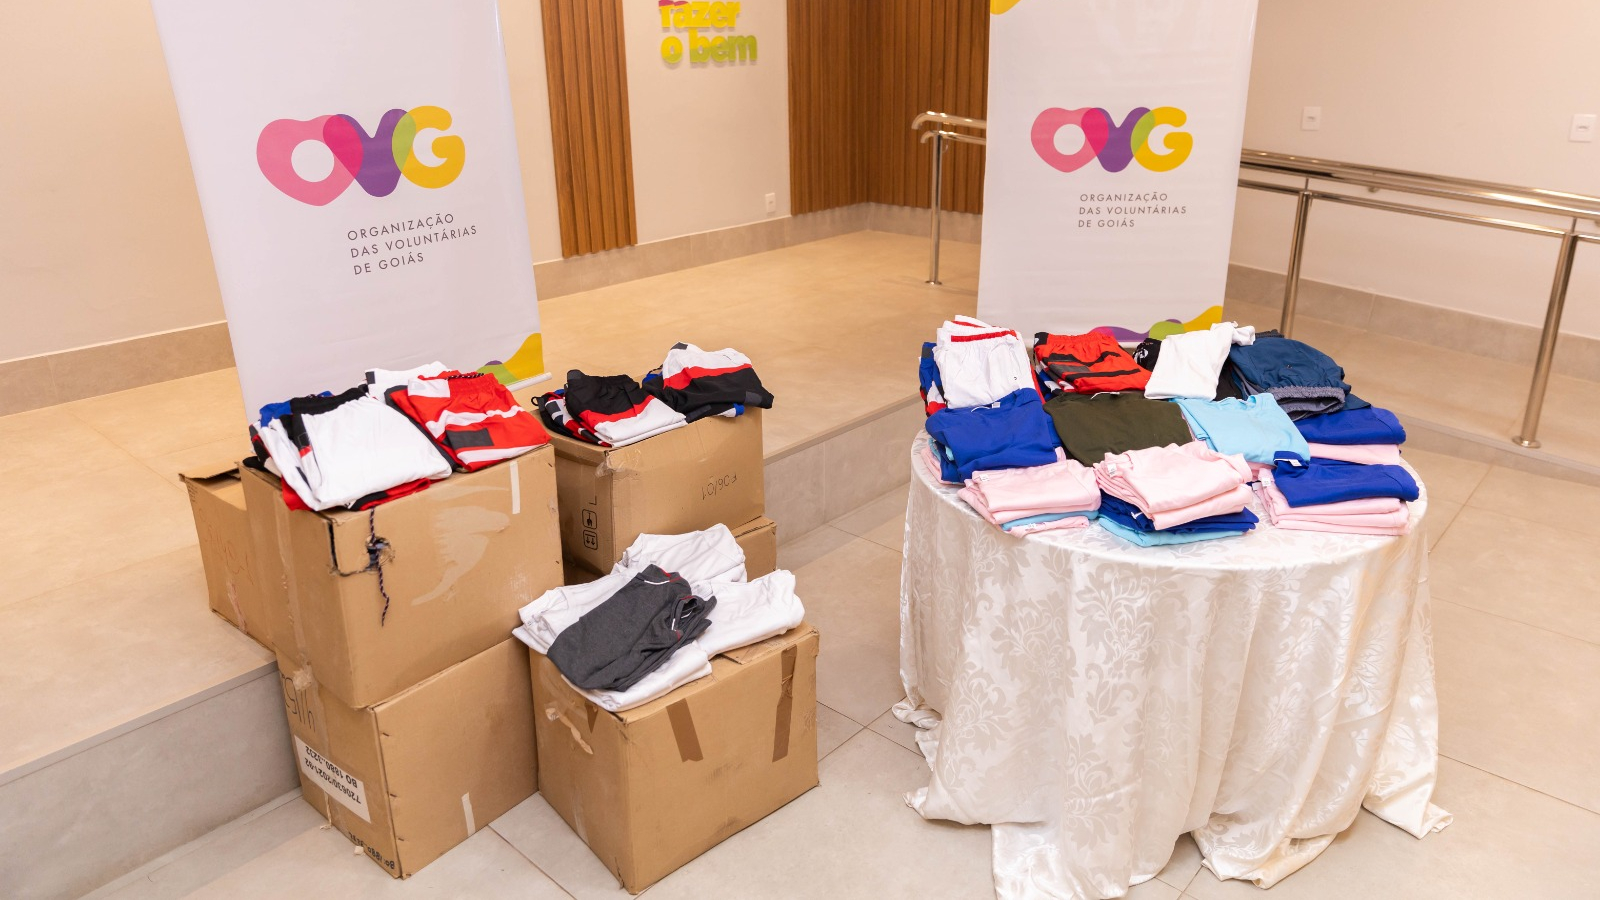 Seds entrega à OVG doação de 20 mil peças de roupas apreendidas pela Receita Federal